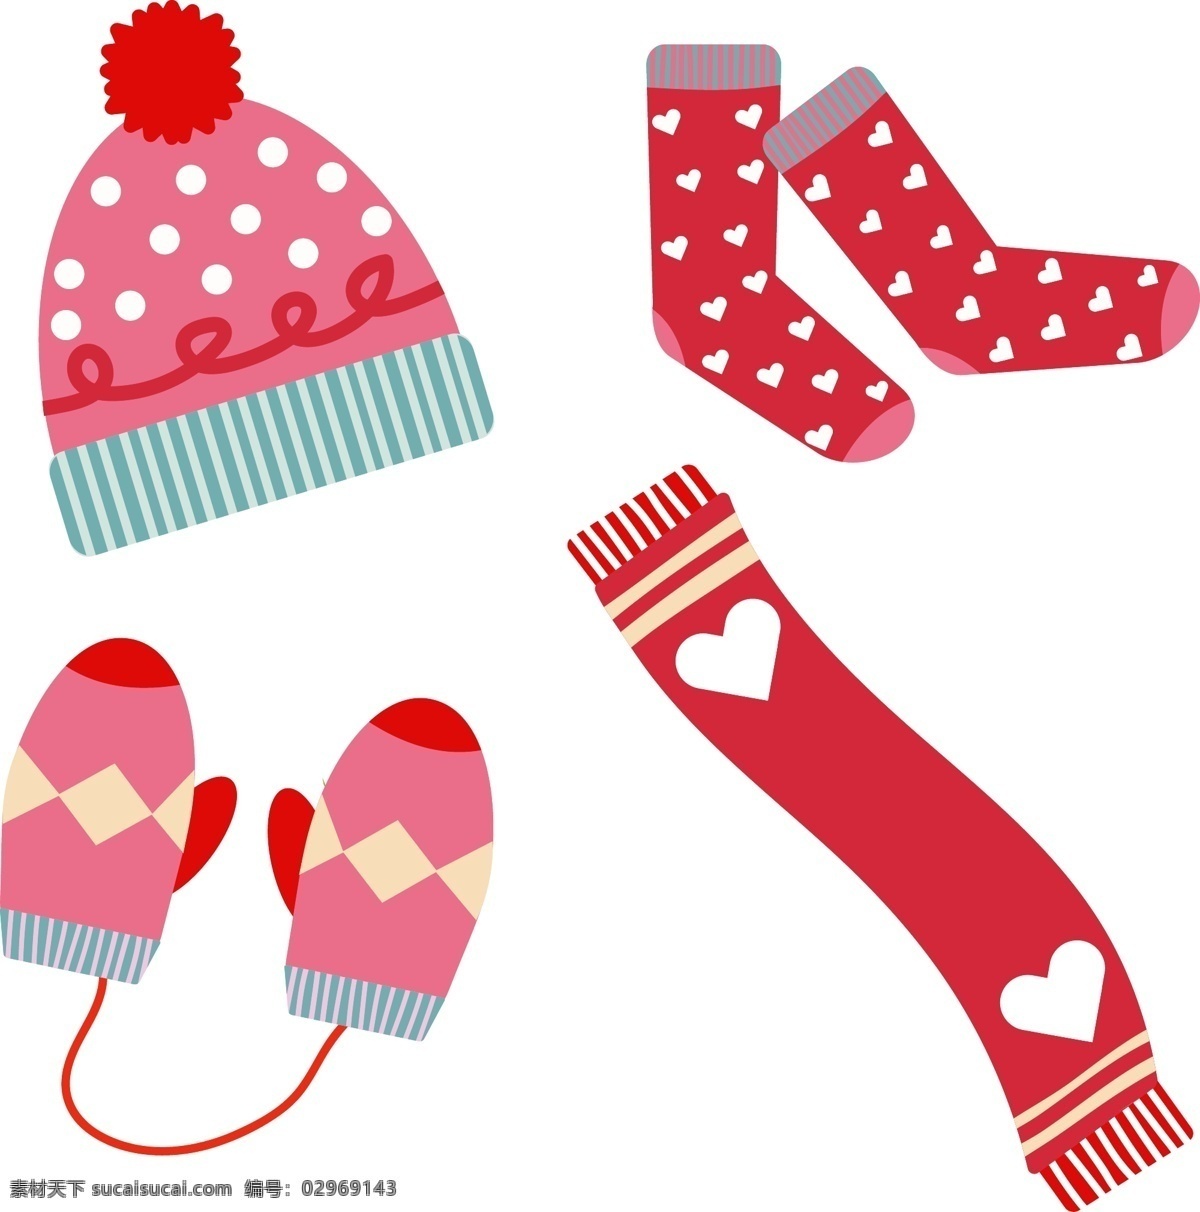 一个 冬天 加热 设备 基本 要素 开襟 羊毛衫 帽子 围巾 温暖 提示 说明 袜子 元素 副 手套 冷